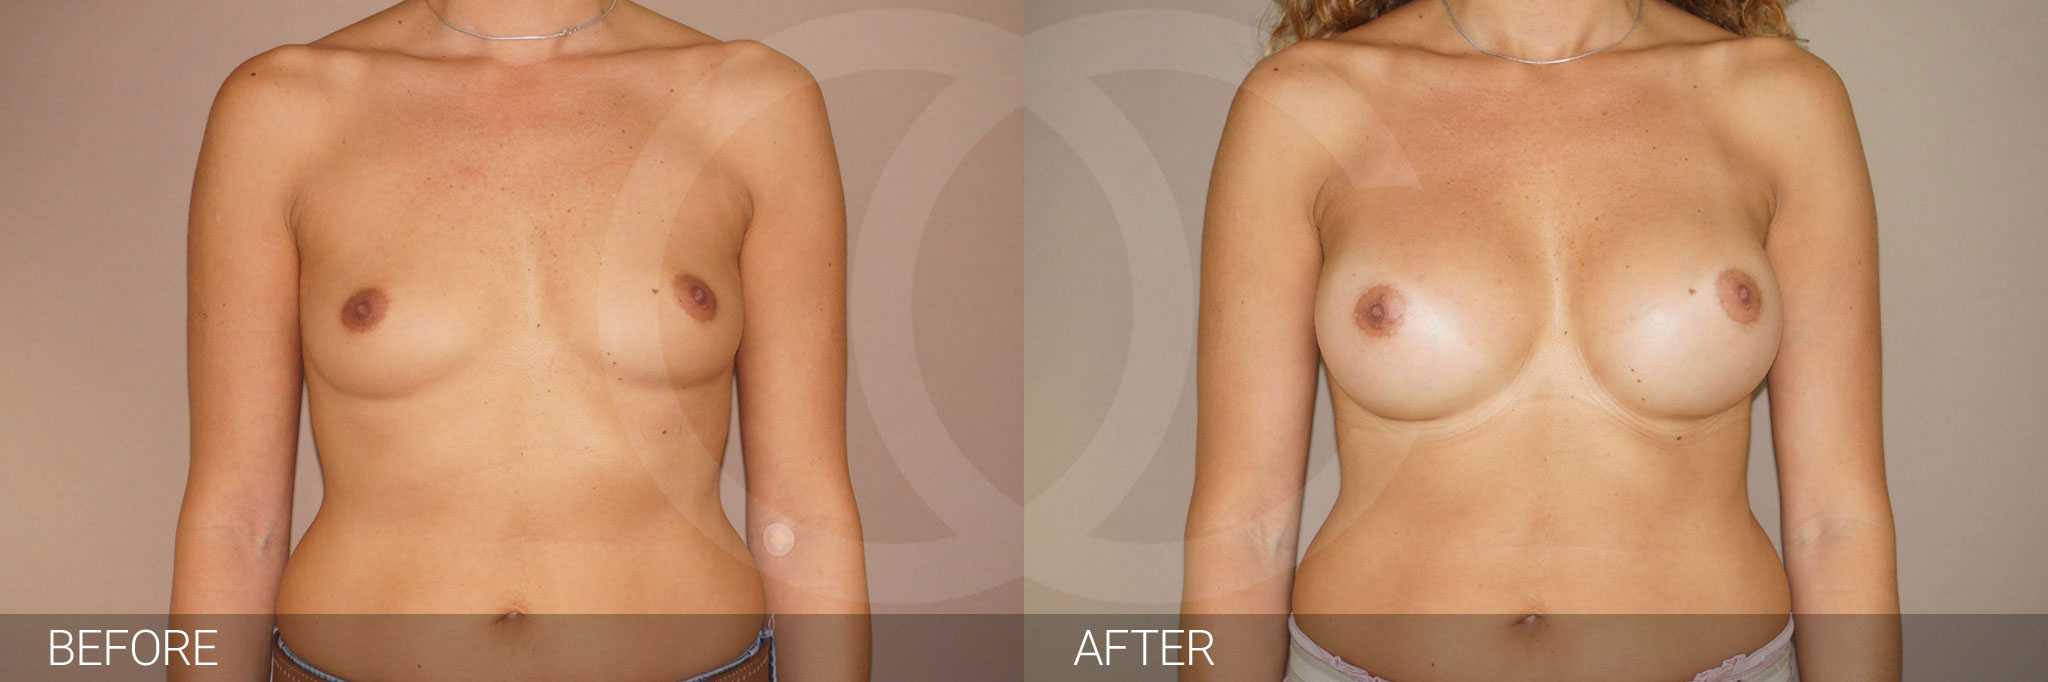 Antes y después aumento pecho implantes silicona caso clínico 8 Marbella Ocean Clinic - frontal